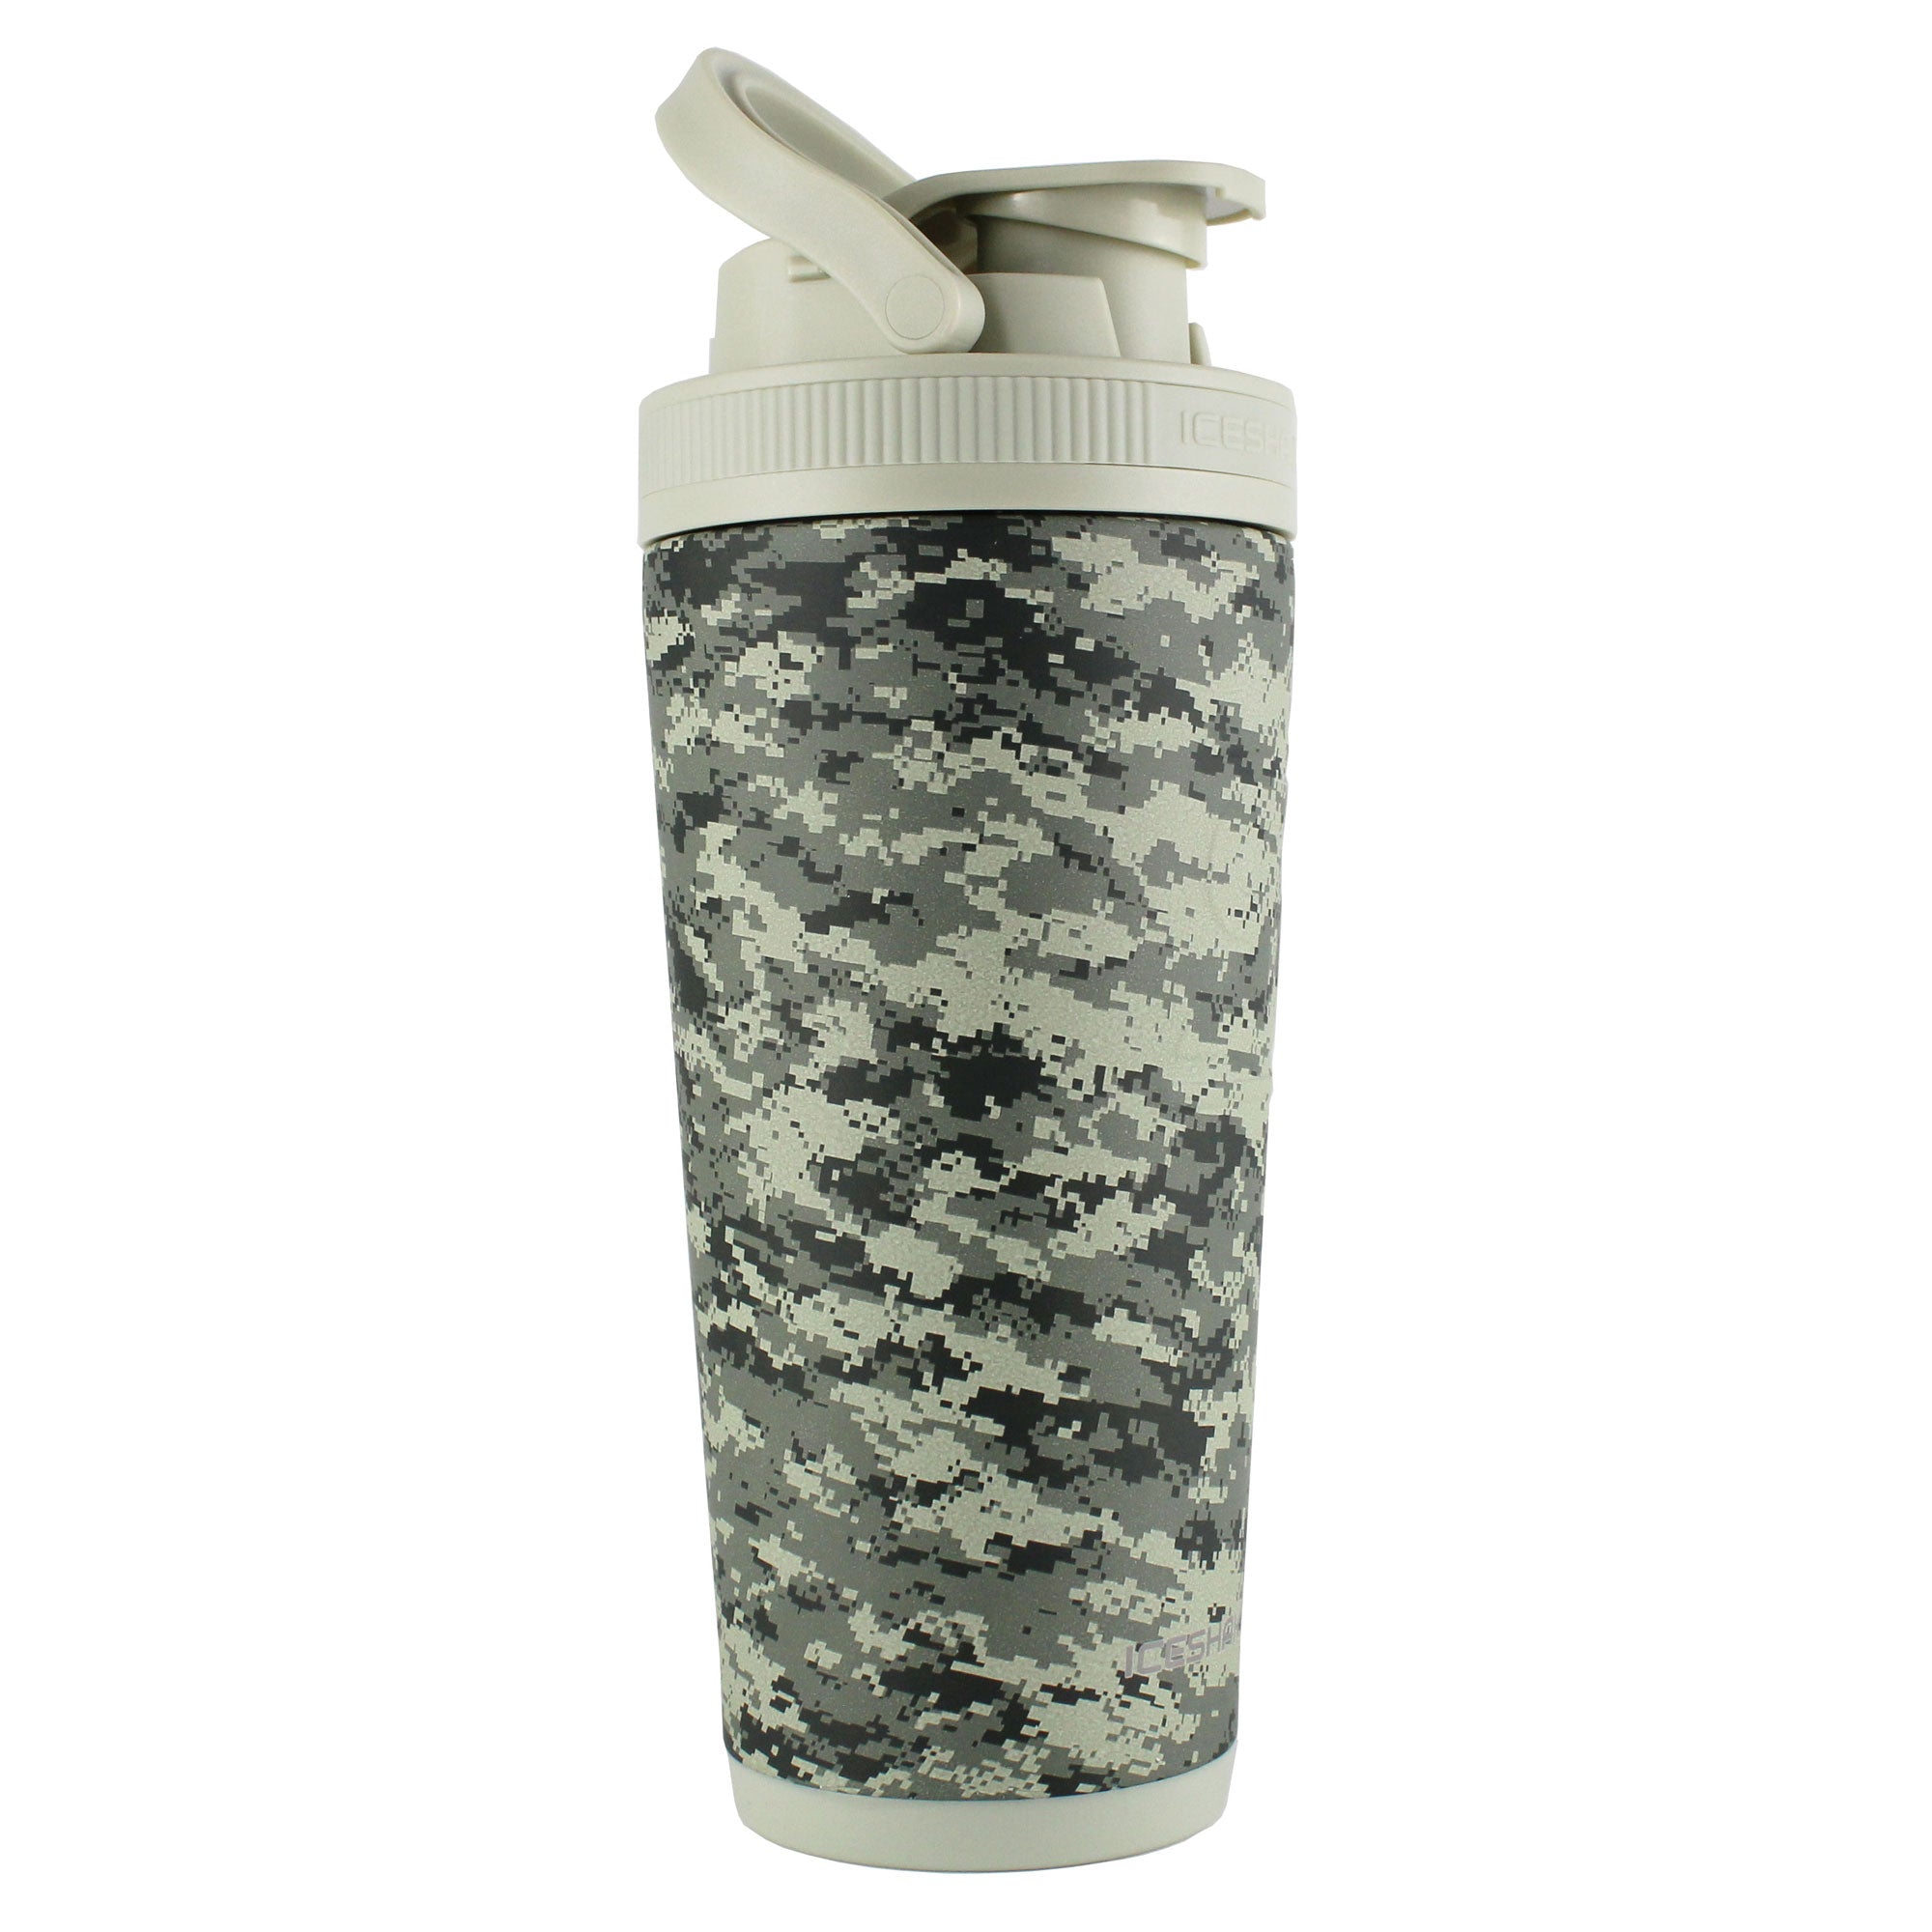 26oz Obvi Insulated Shaker Bottle 